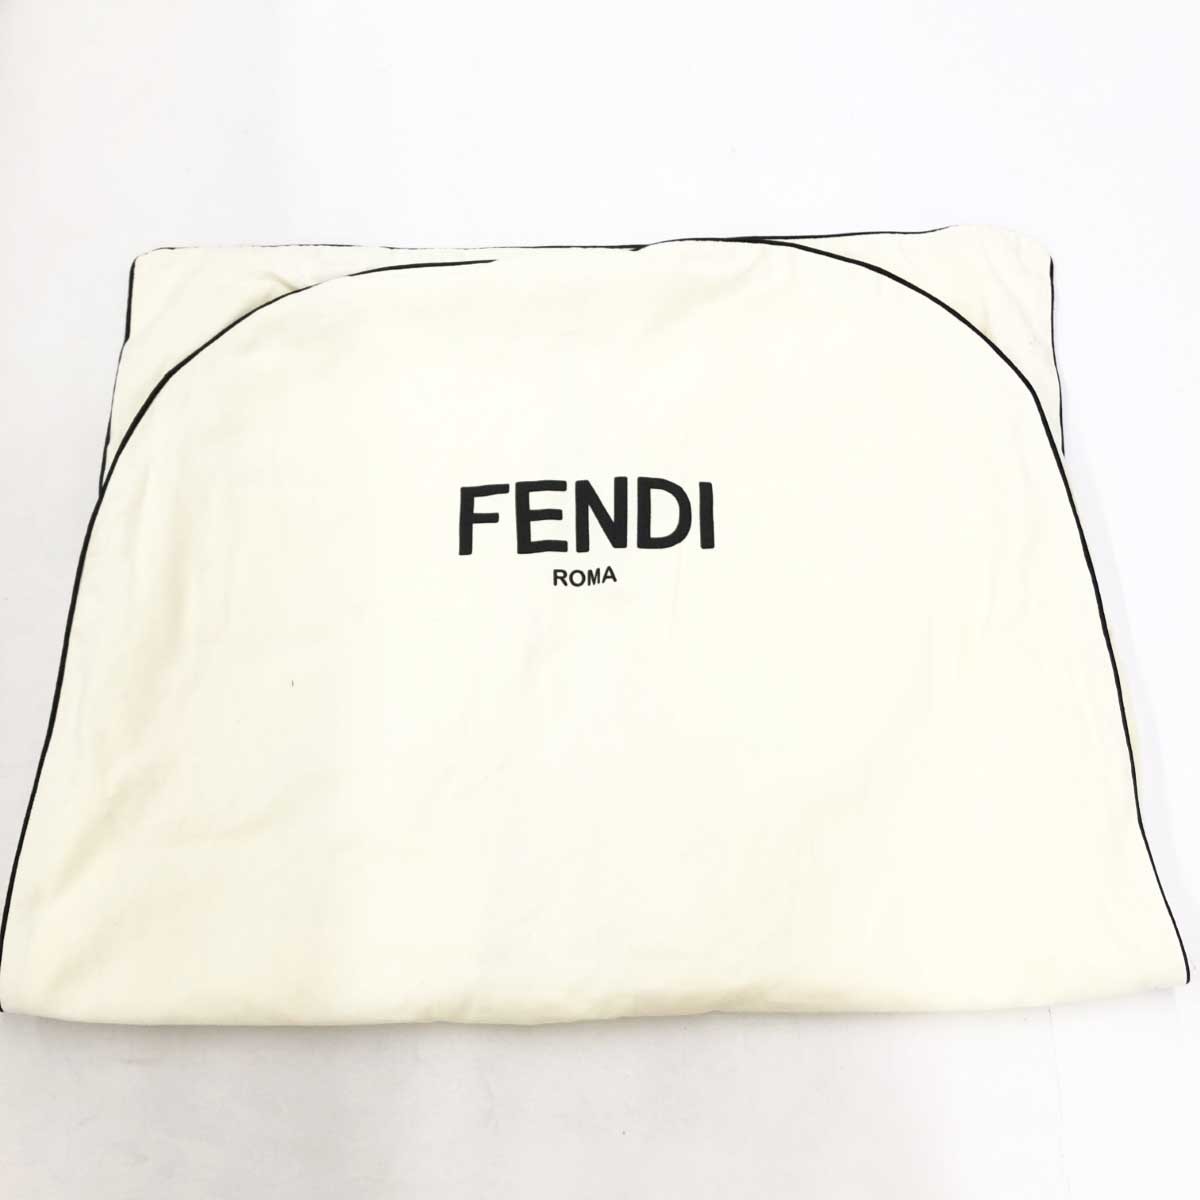  прекрасный товар *FENDI Fendi шорты размер 38* голубой шелк женский низ Astro roji- принт 